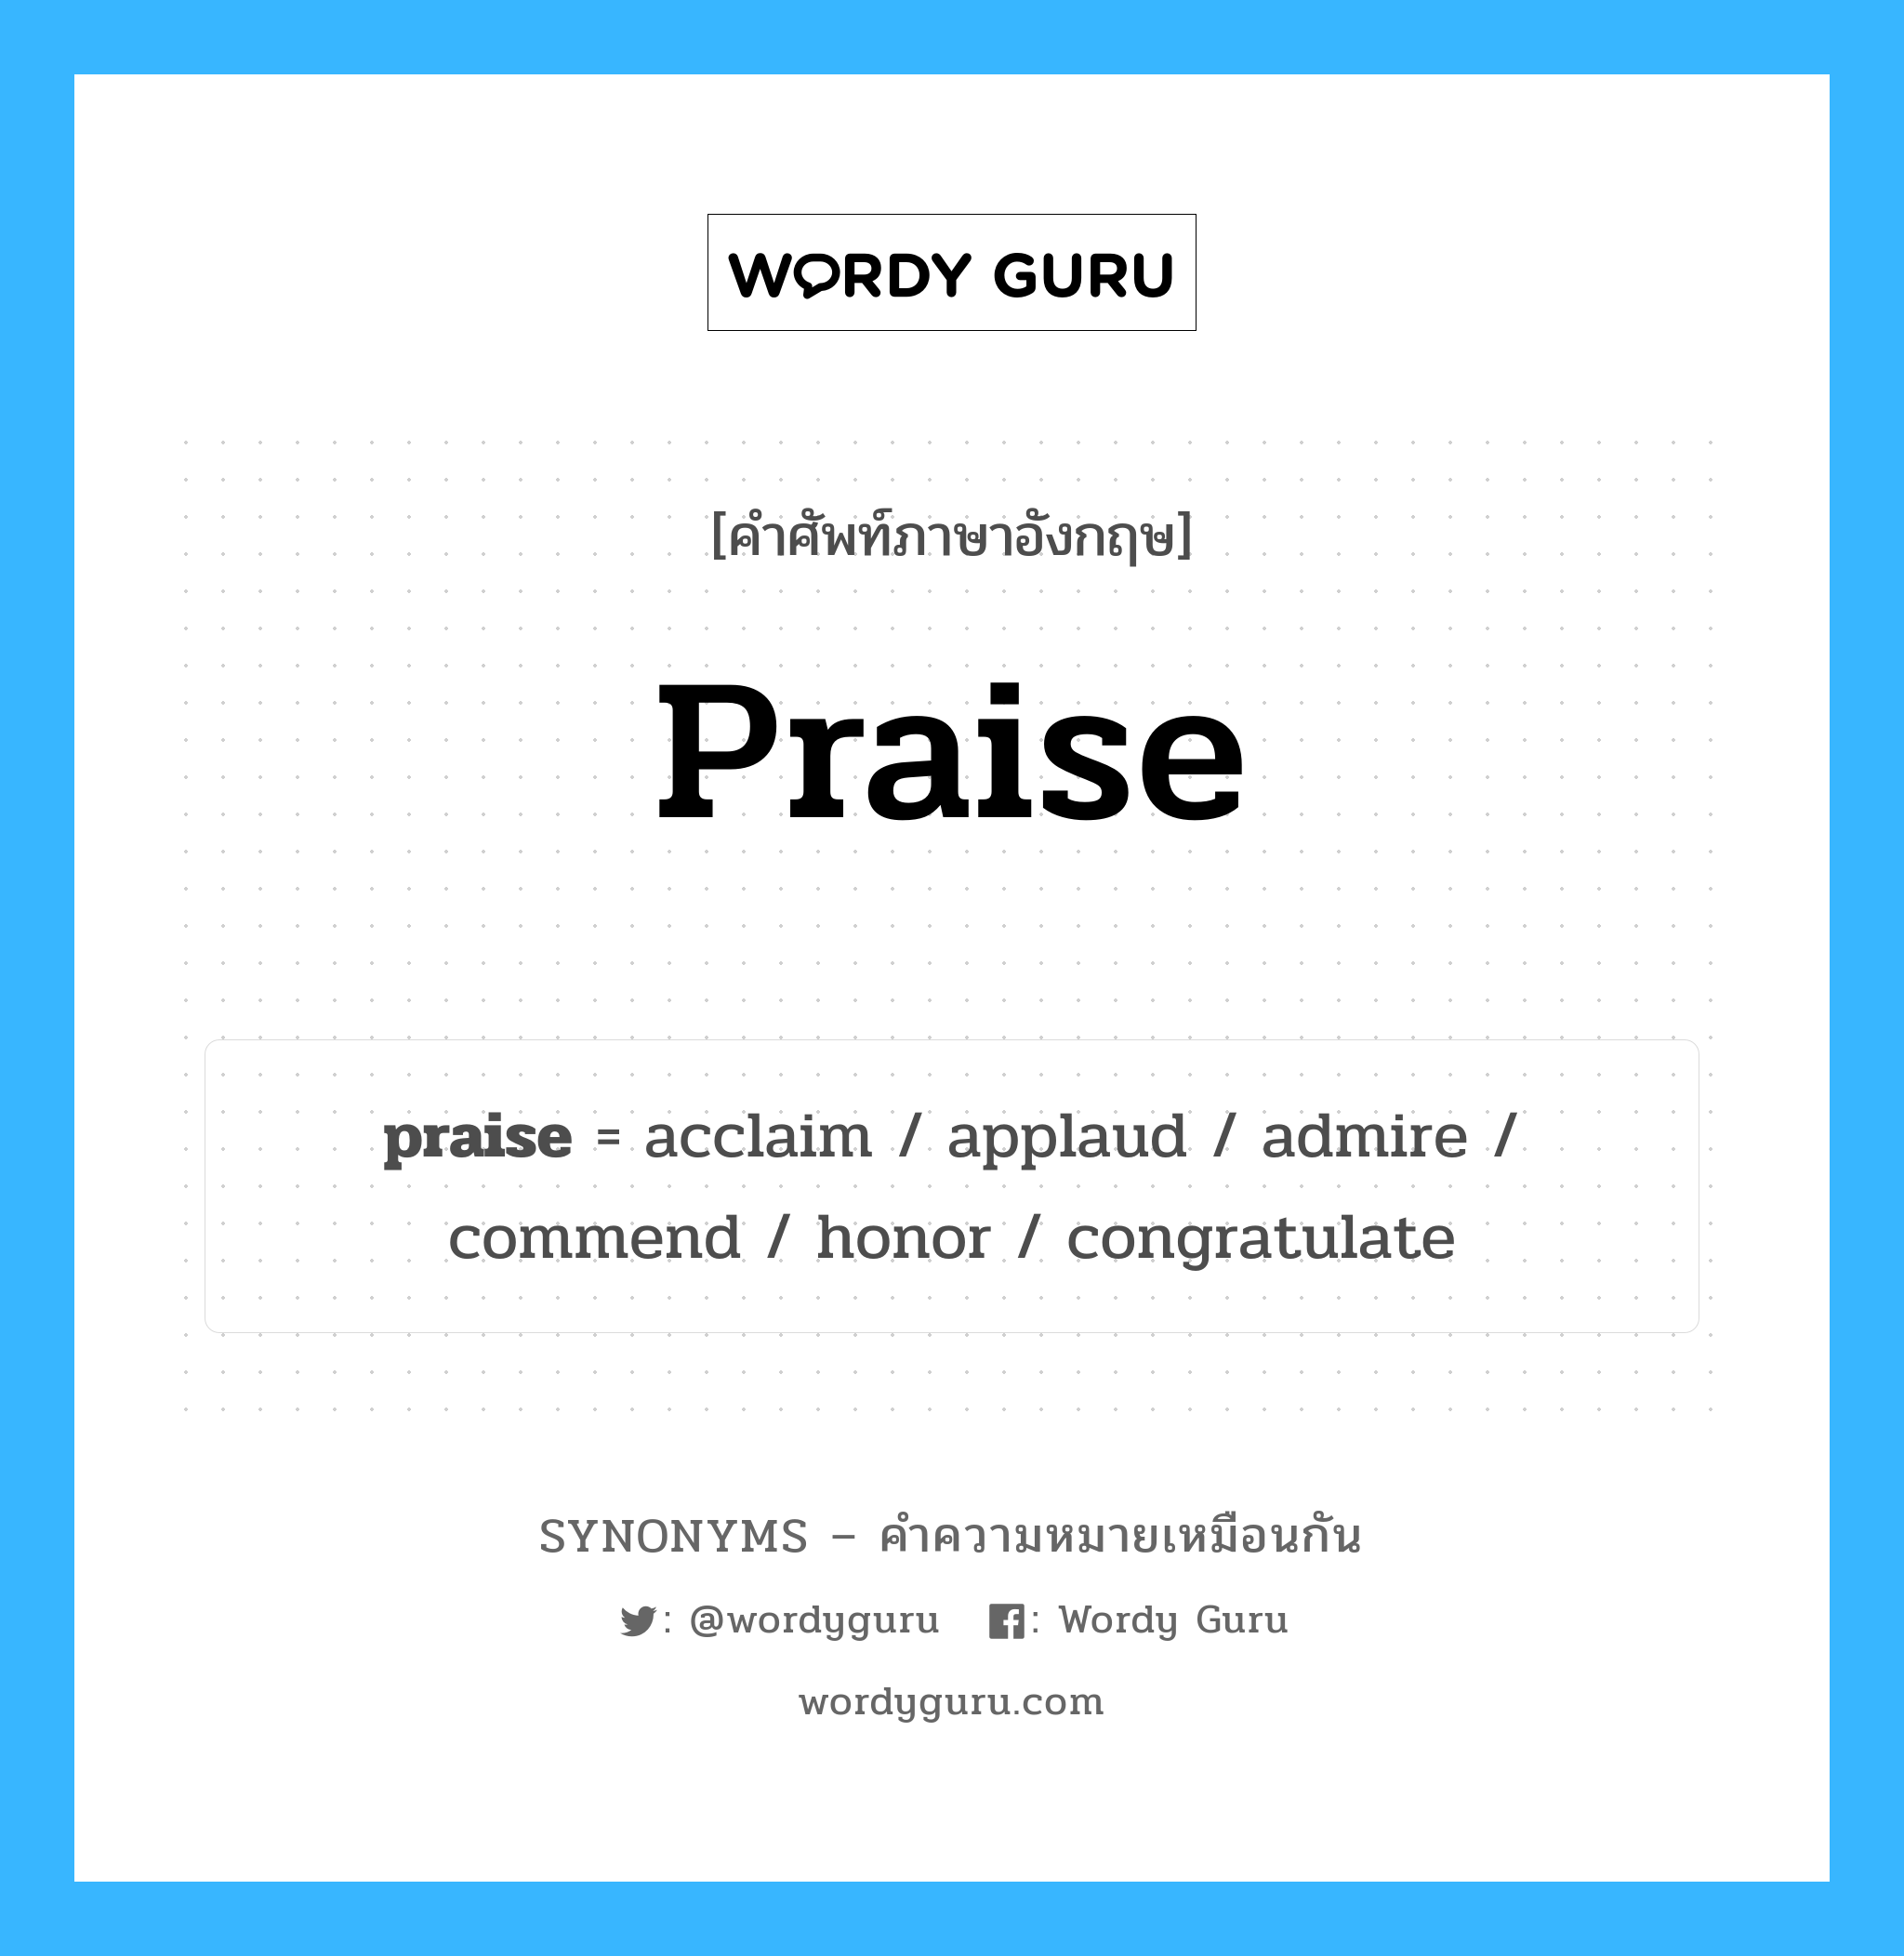 praise เป็นหนึ่งใน admire และมีคำอื่น ๆ อีกดังนี้, คำศัพท์ภาษาอังกฤษ praise ความหมายคล้ายกันกับ admire แปลว่า ชื่นชม หมวด admire